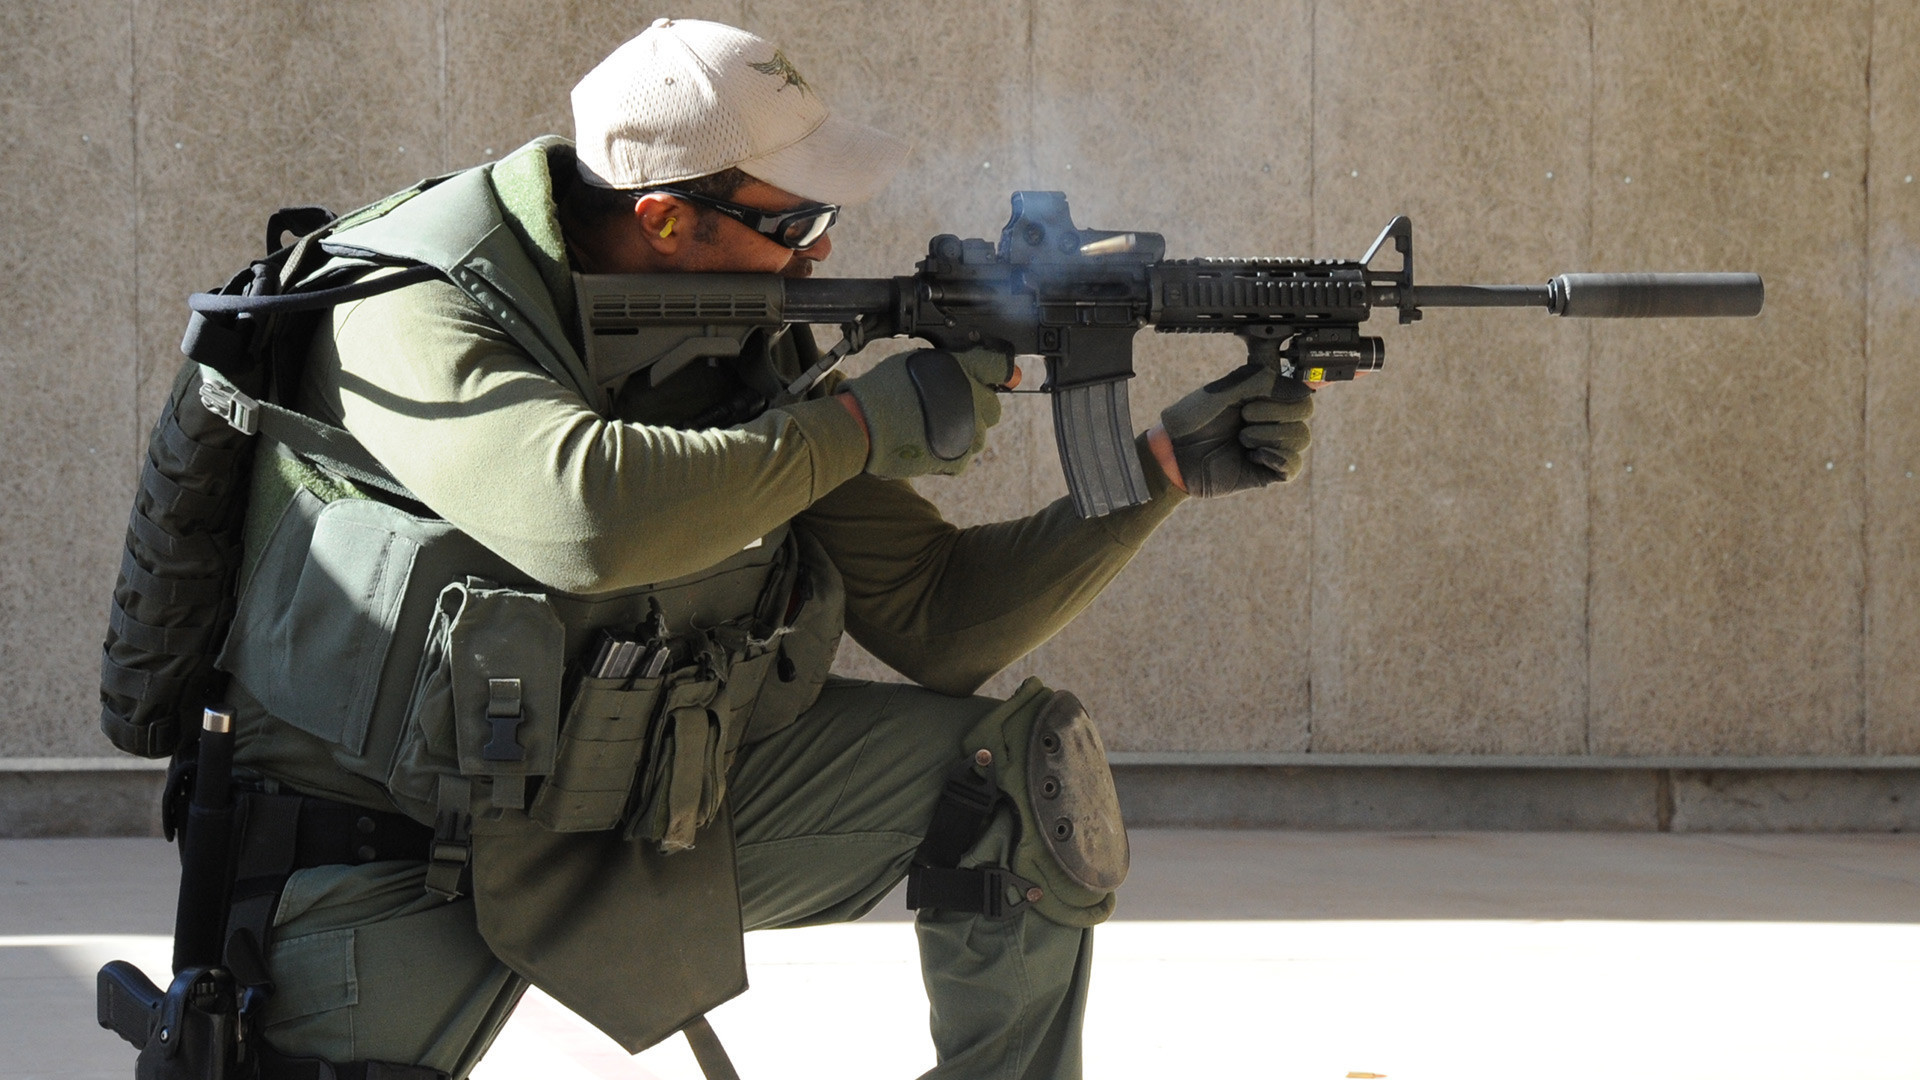 Pripadnik ameriške posebne policijske enote SWAT med vajo na strelišču